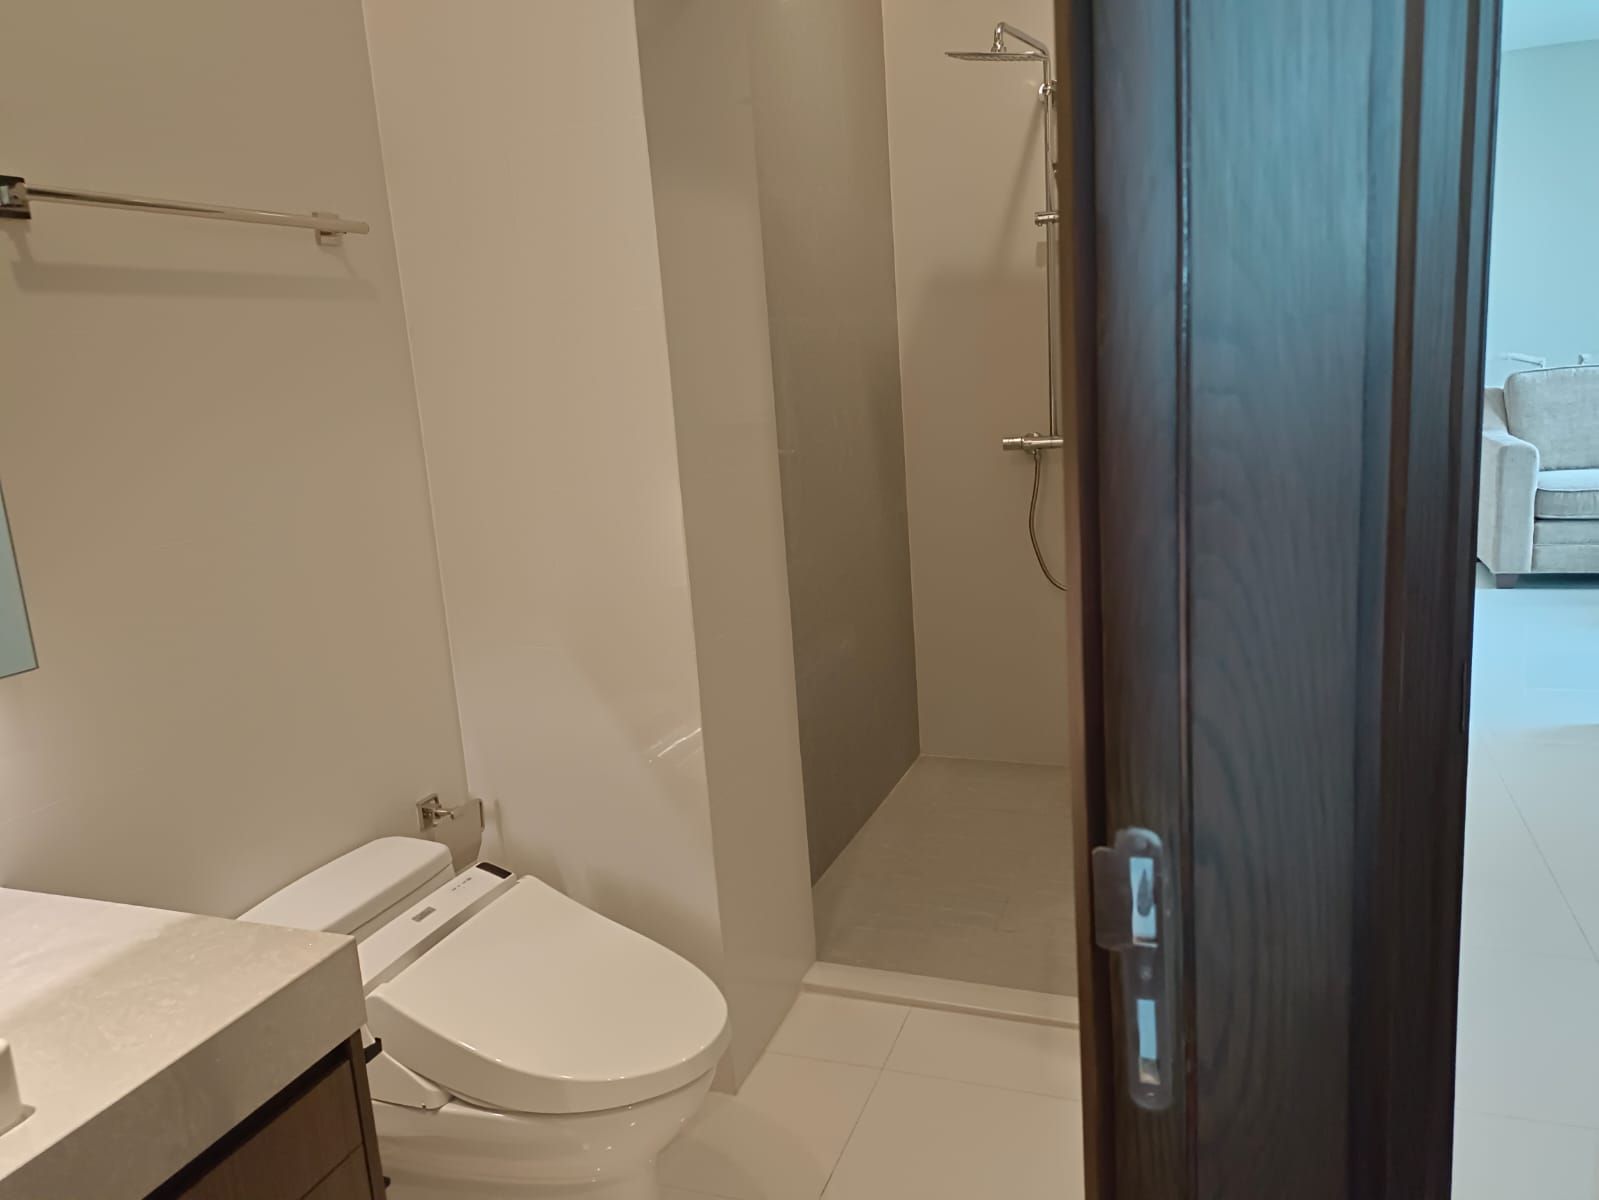 2 Bedrooms, 2 Bathrooms 113.43sqm Q House Condo Sukhumvit 79 For Rent